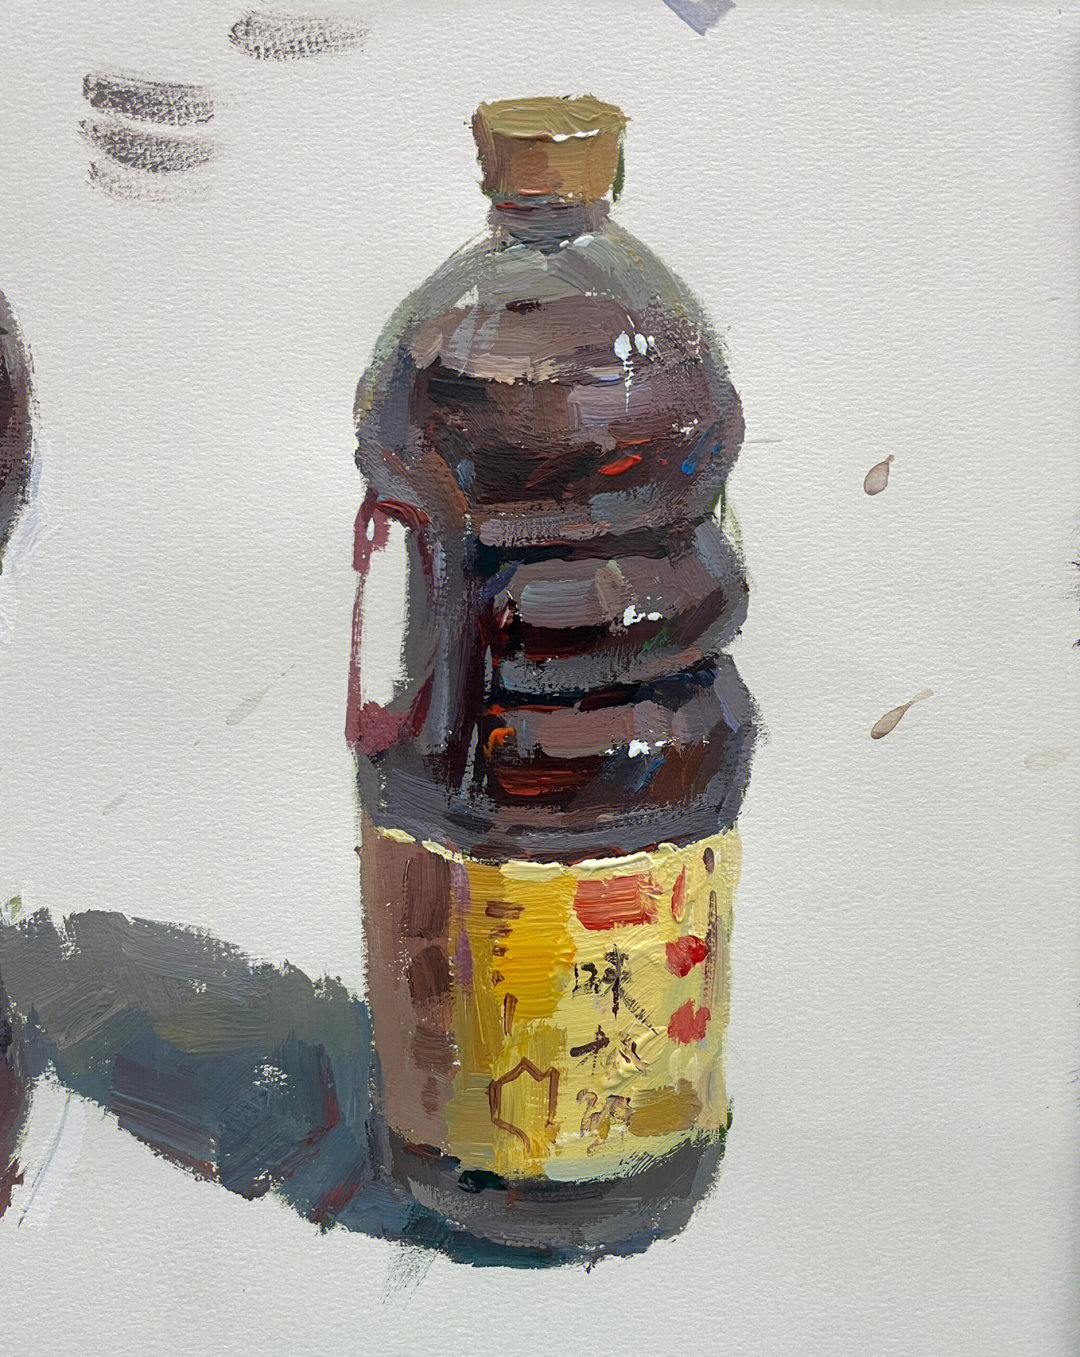 酱油瓶素描 单个图片